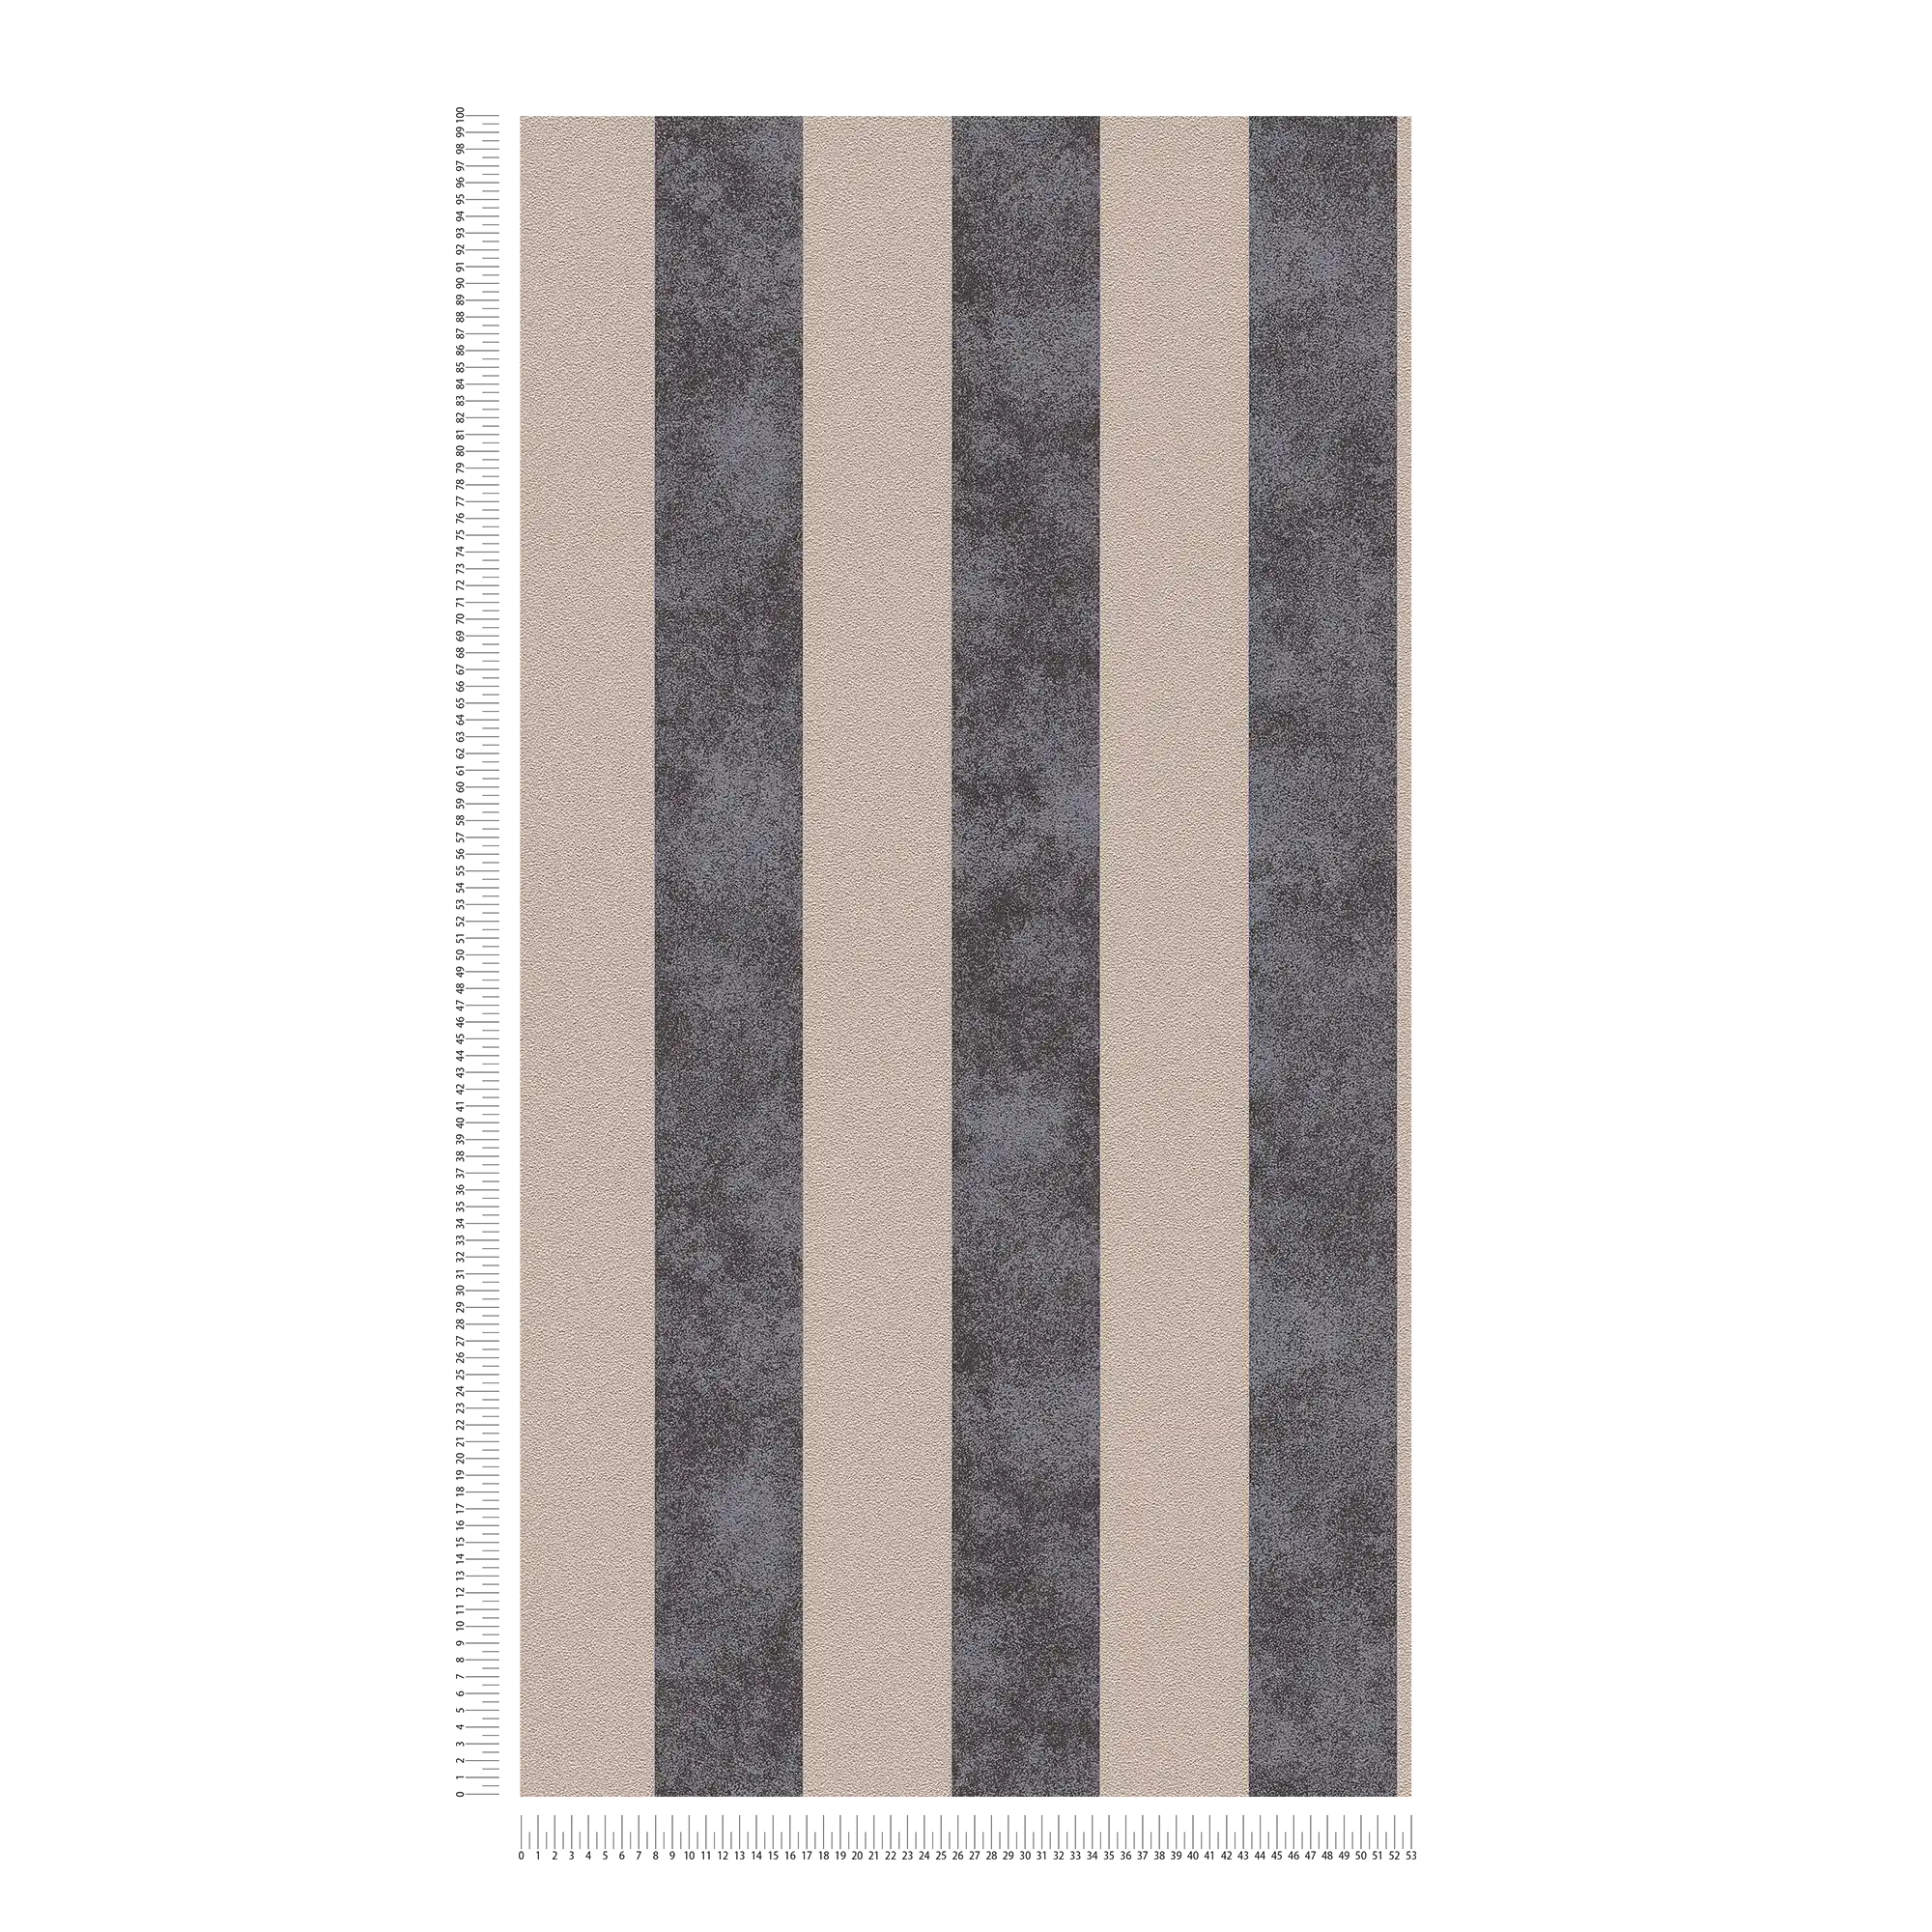             Papier peint à rayures en bloc avec motifs colorés et texturés - noir, beige, argenté
        